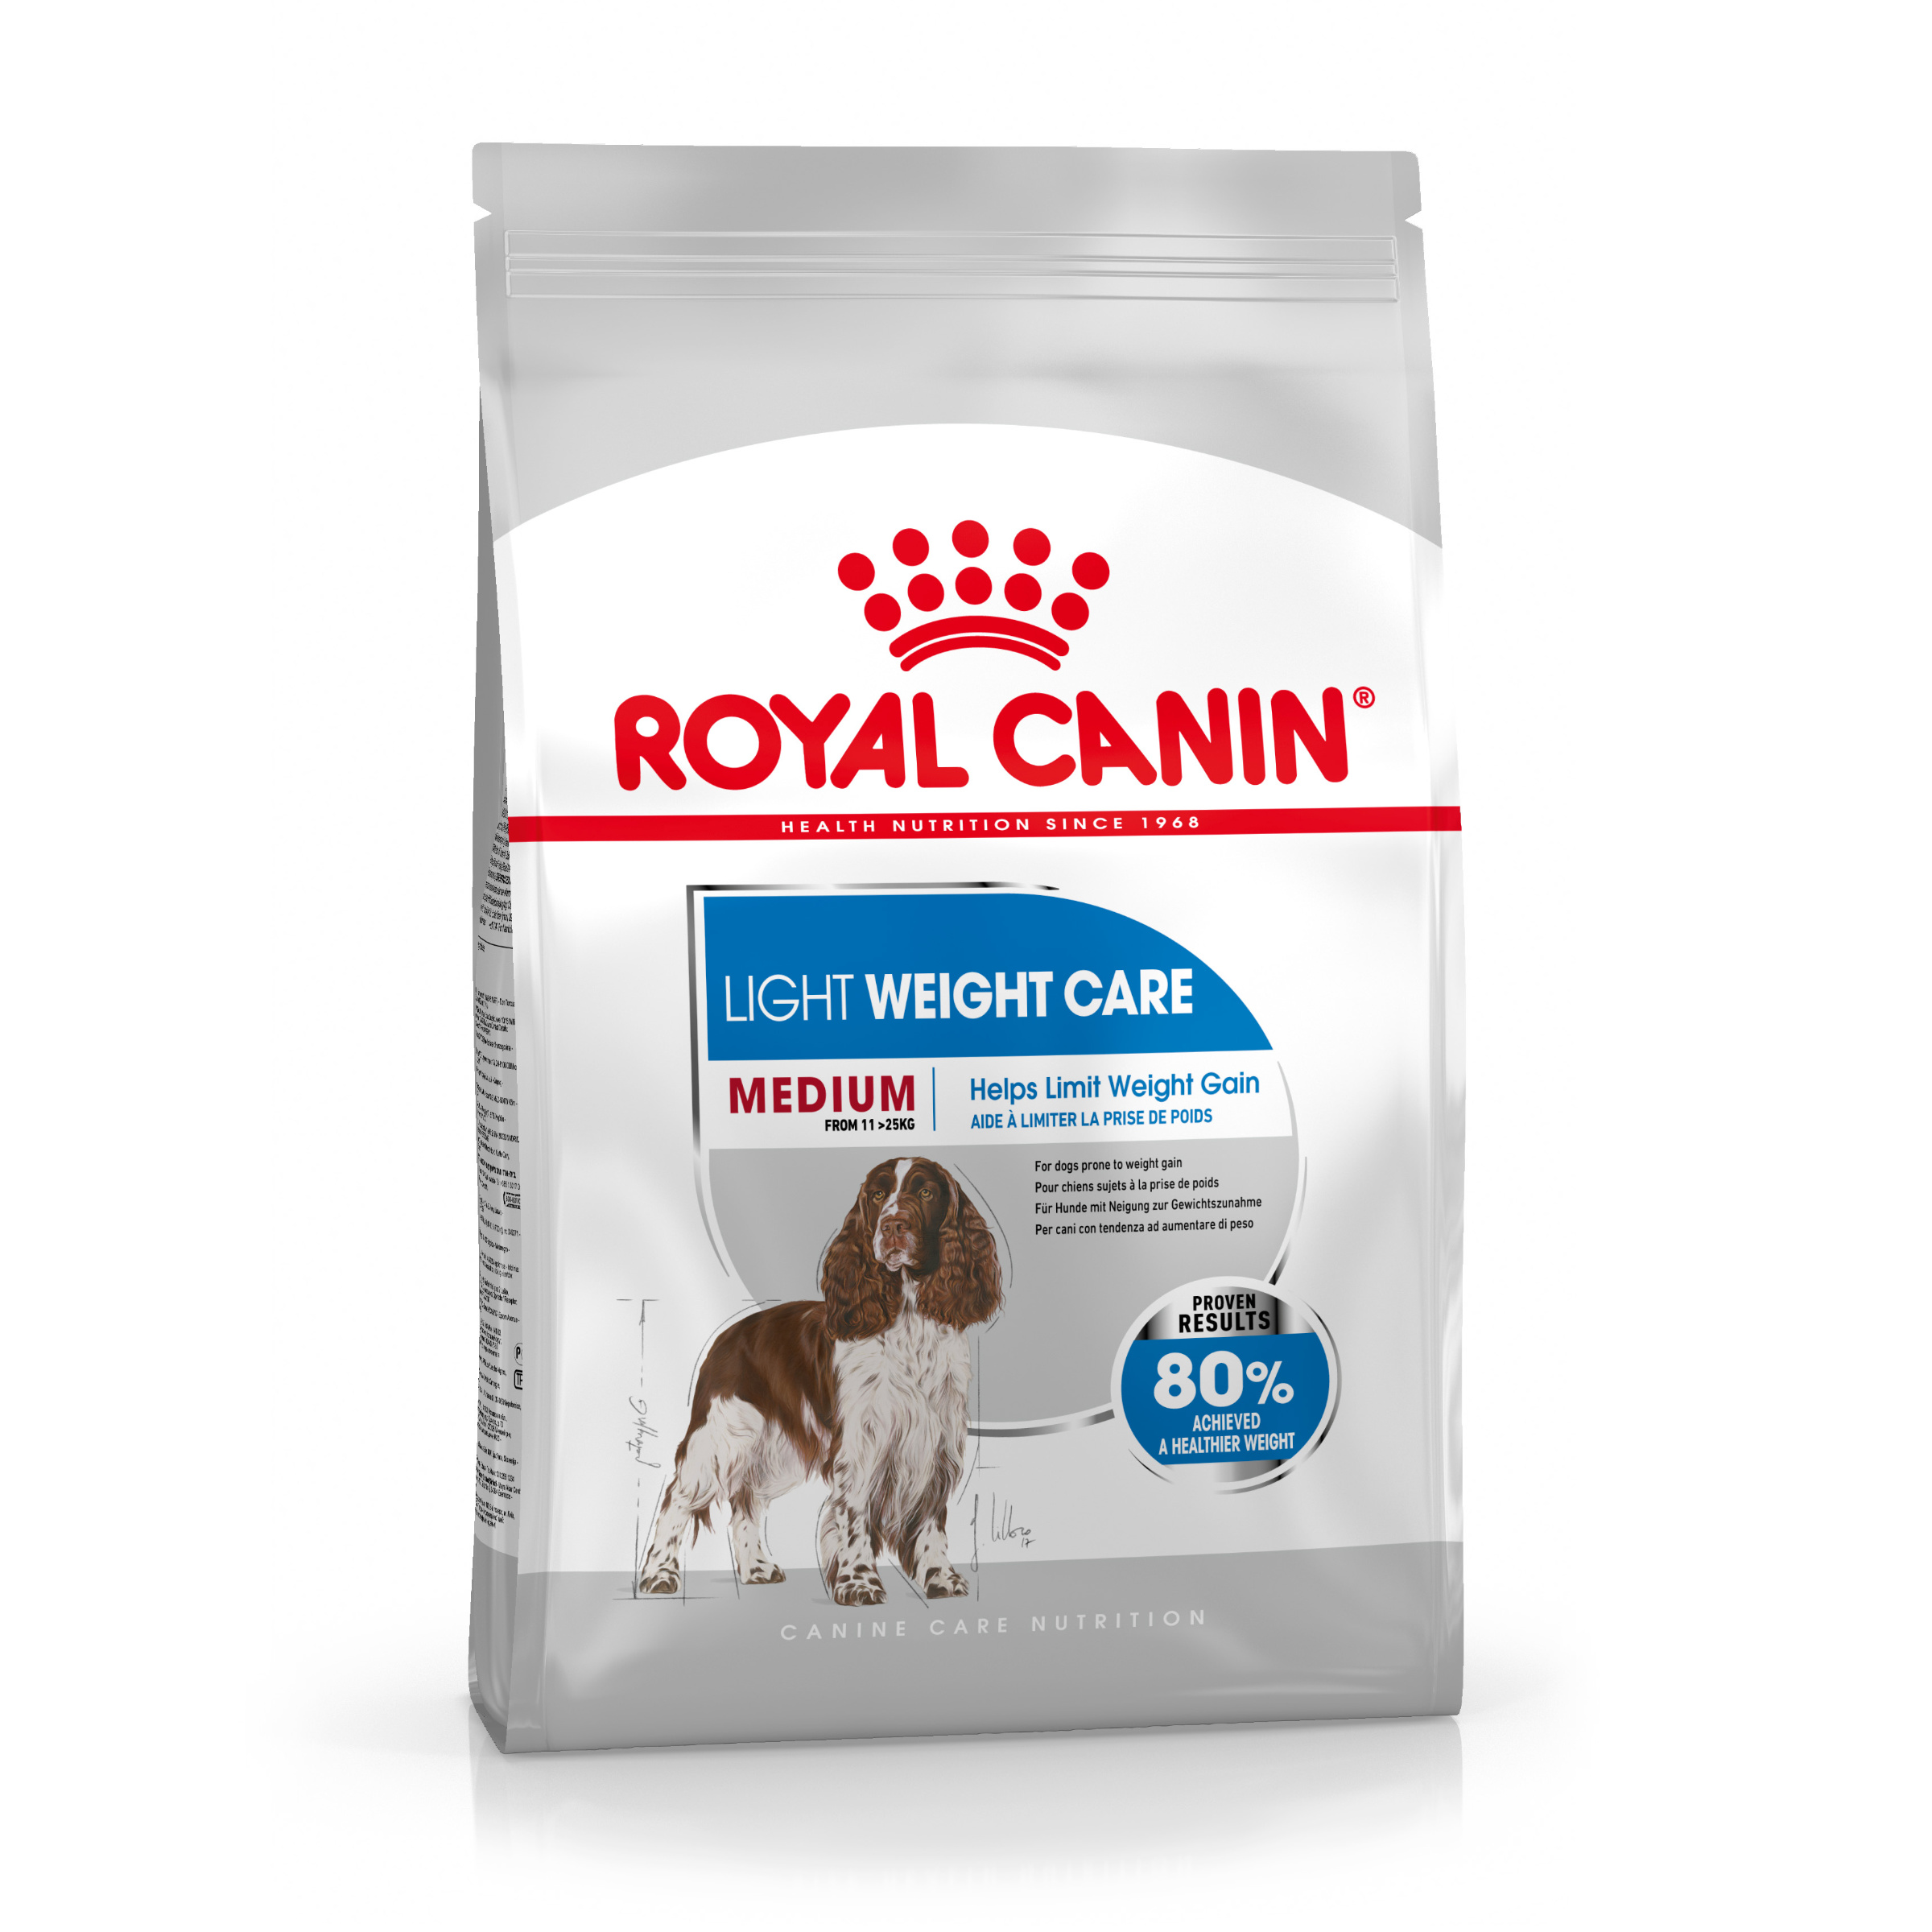 ROYAL CANIN® medium light weight care chien moyen prise de poids 3kg